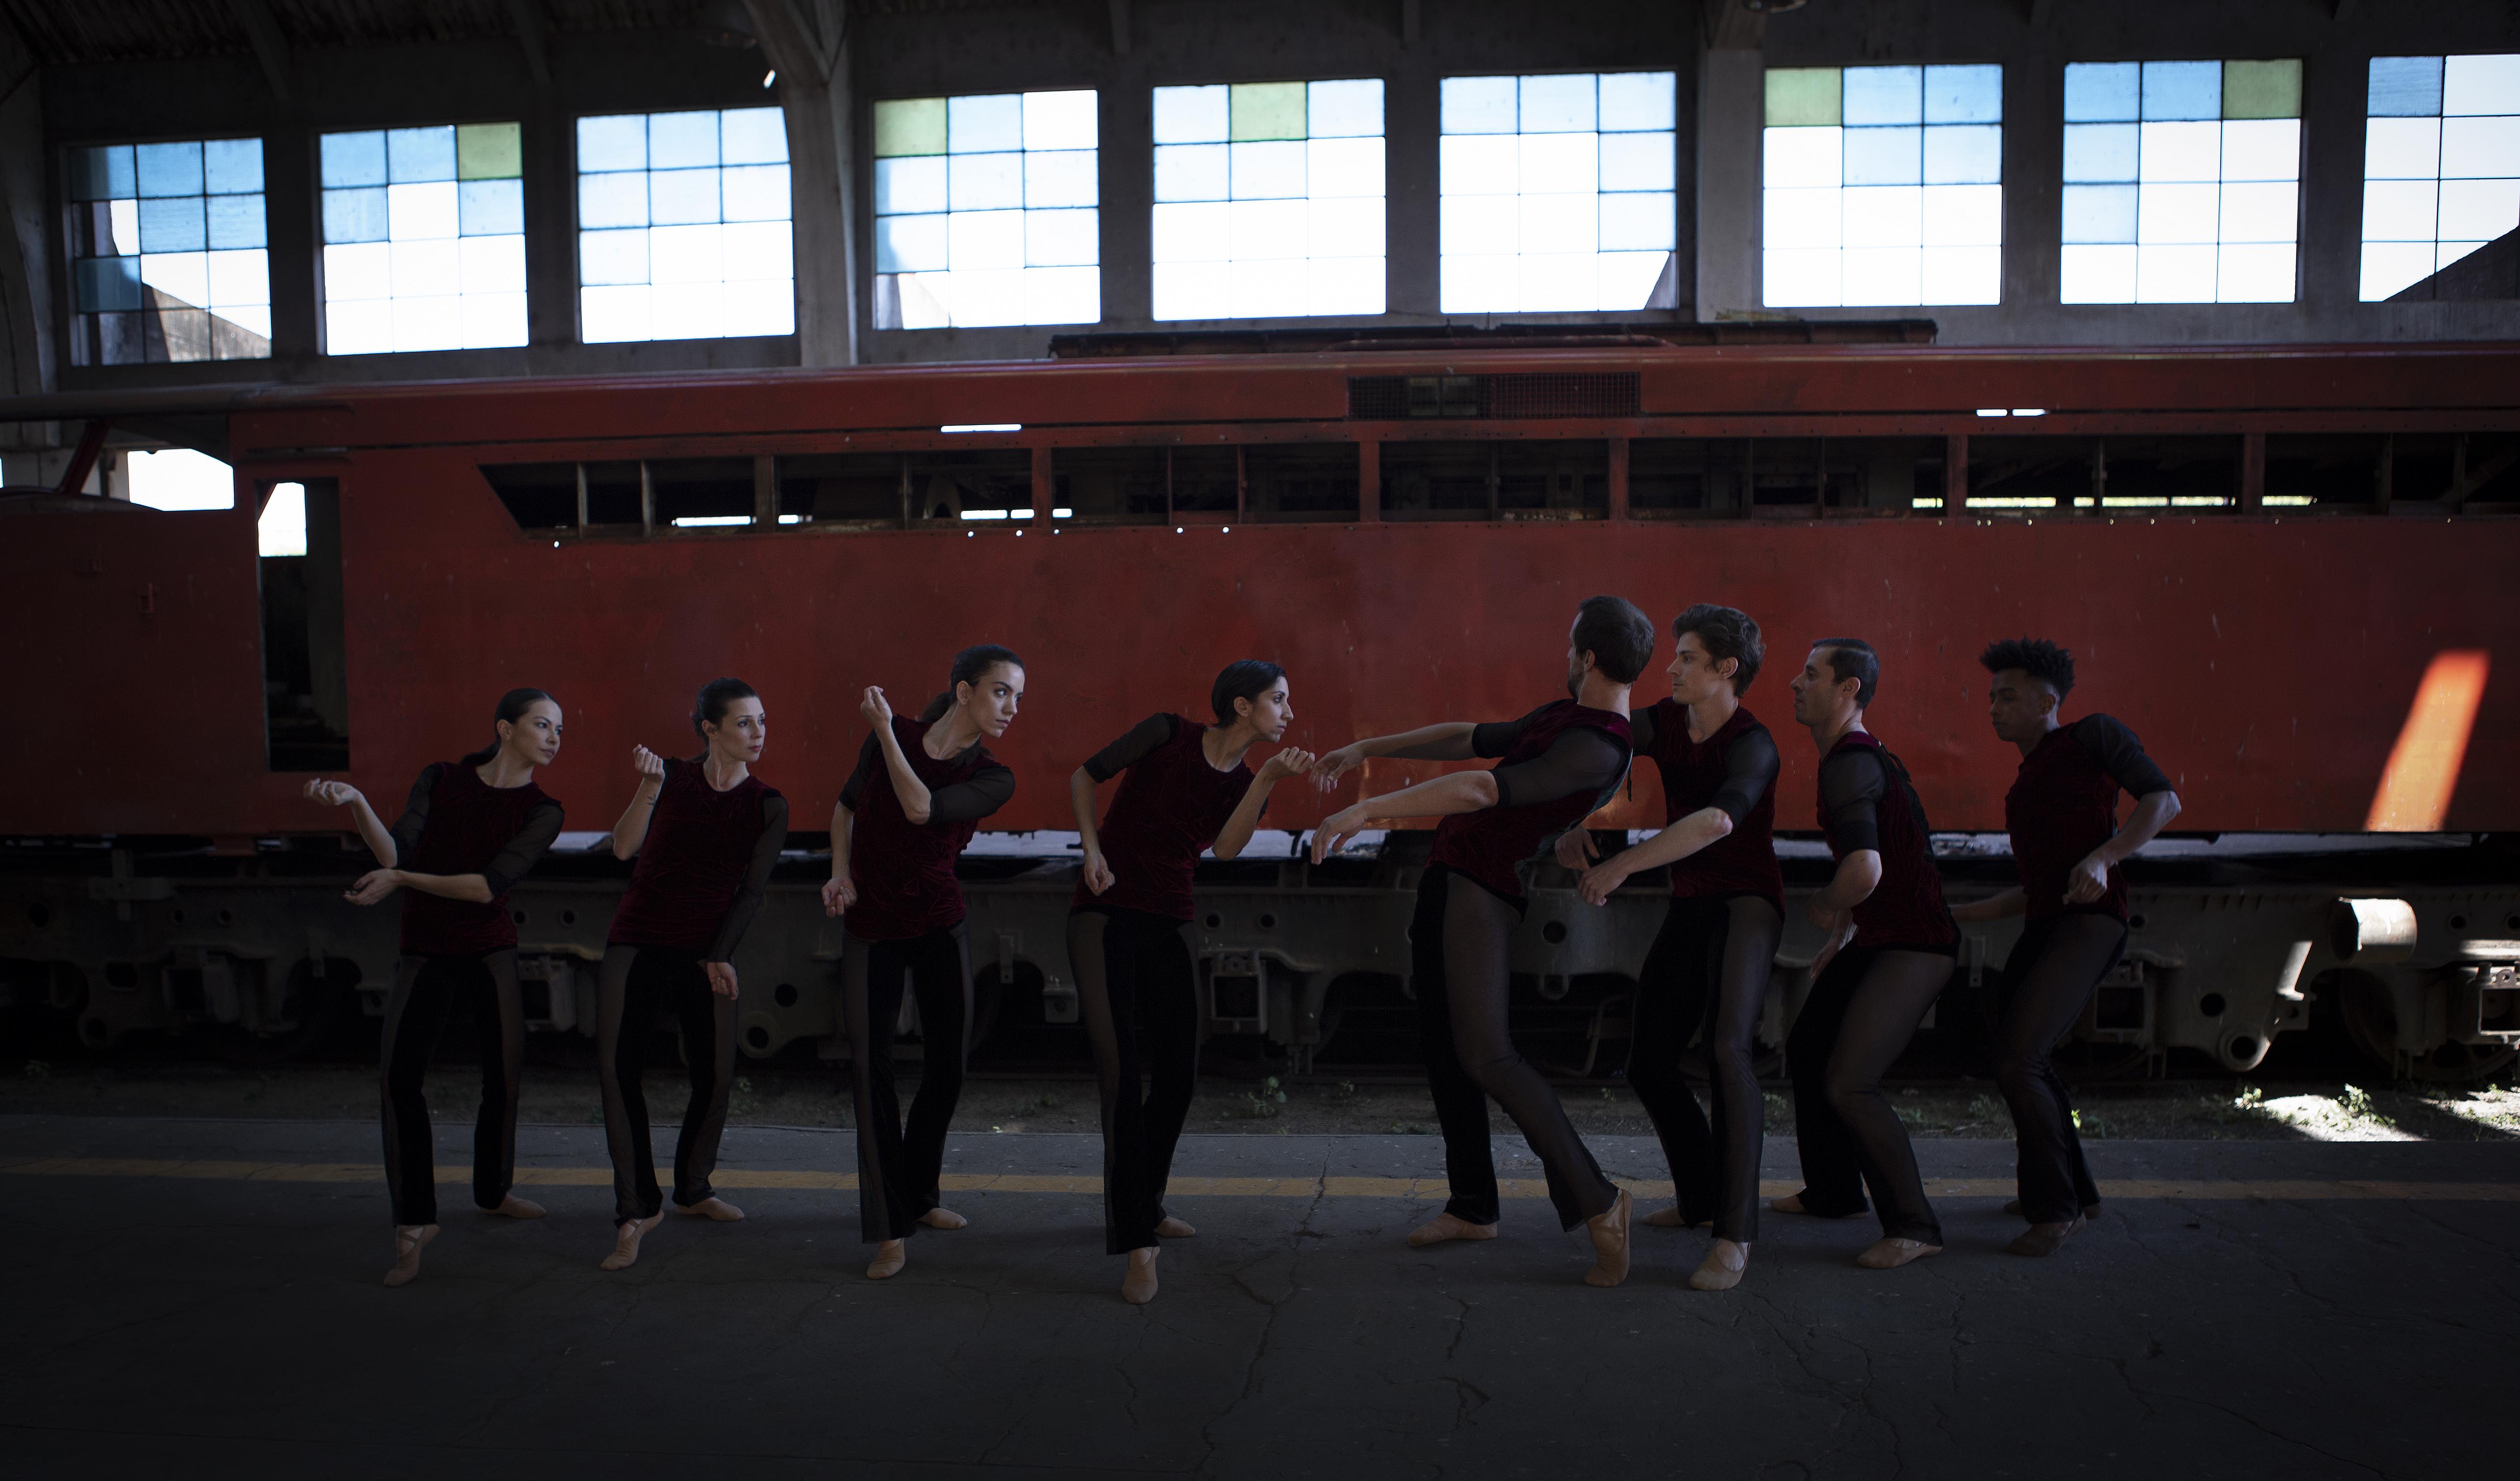 Em frente à lateral de um trem vermelho, quatro bailarinas e quatro bailarinos estão dispostos em fila indiana com calças pretas e blusas vermelhas